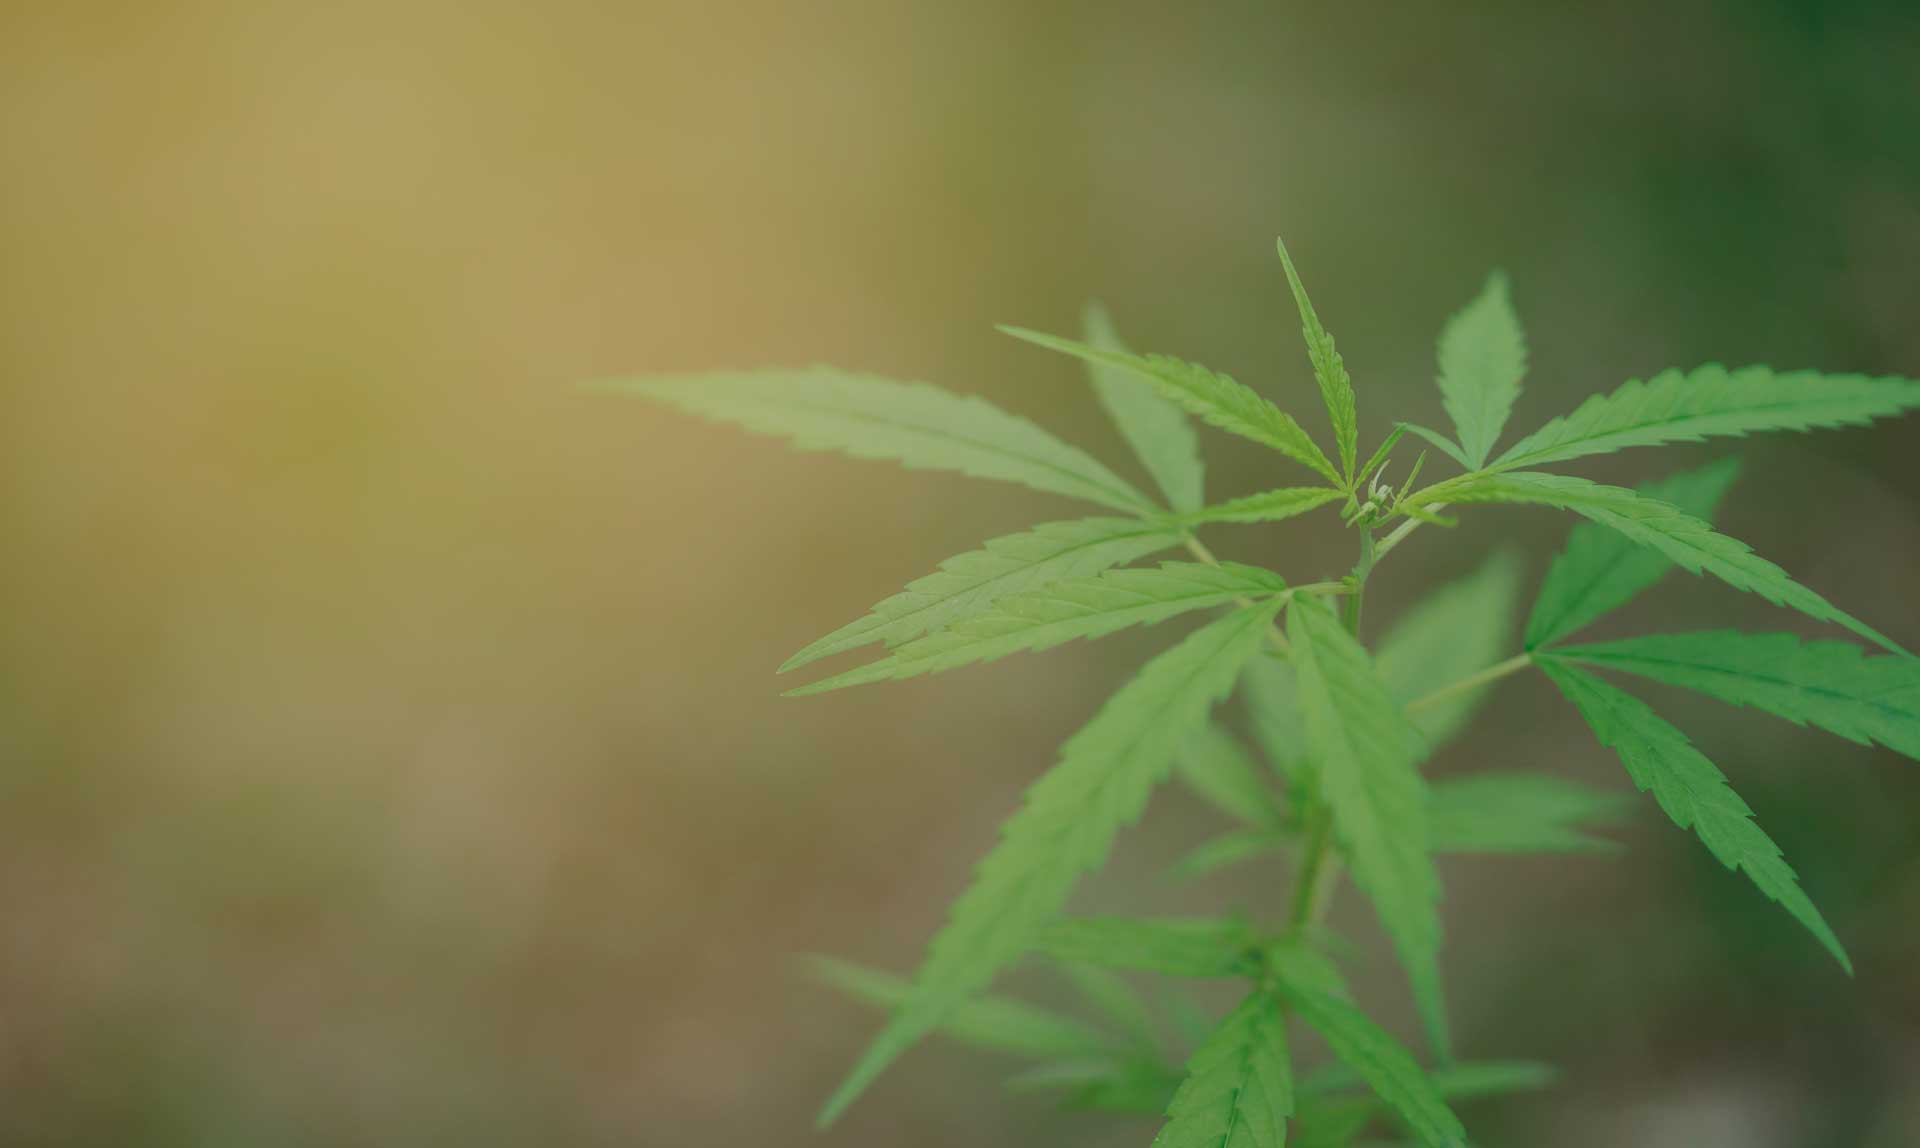 Cultivando medicina. Newsletter sobre el cultivo de marihuana.